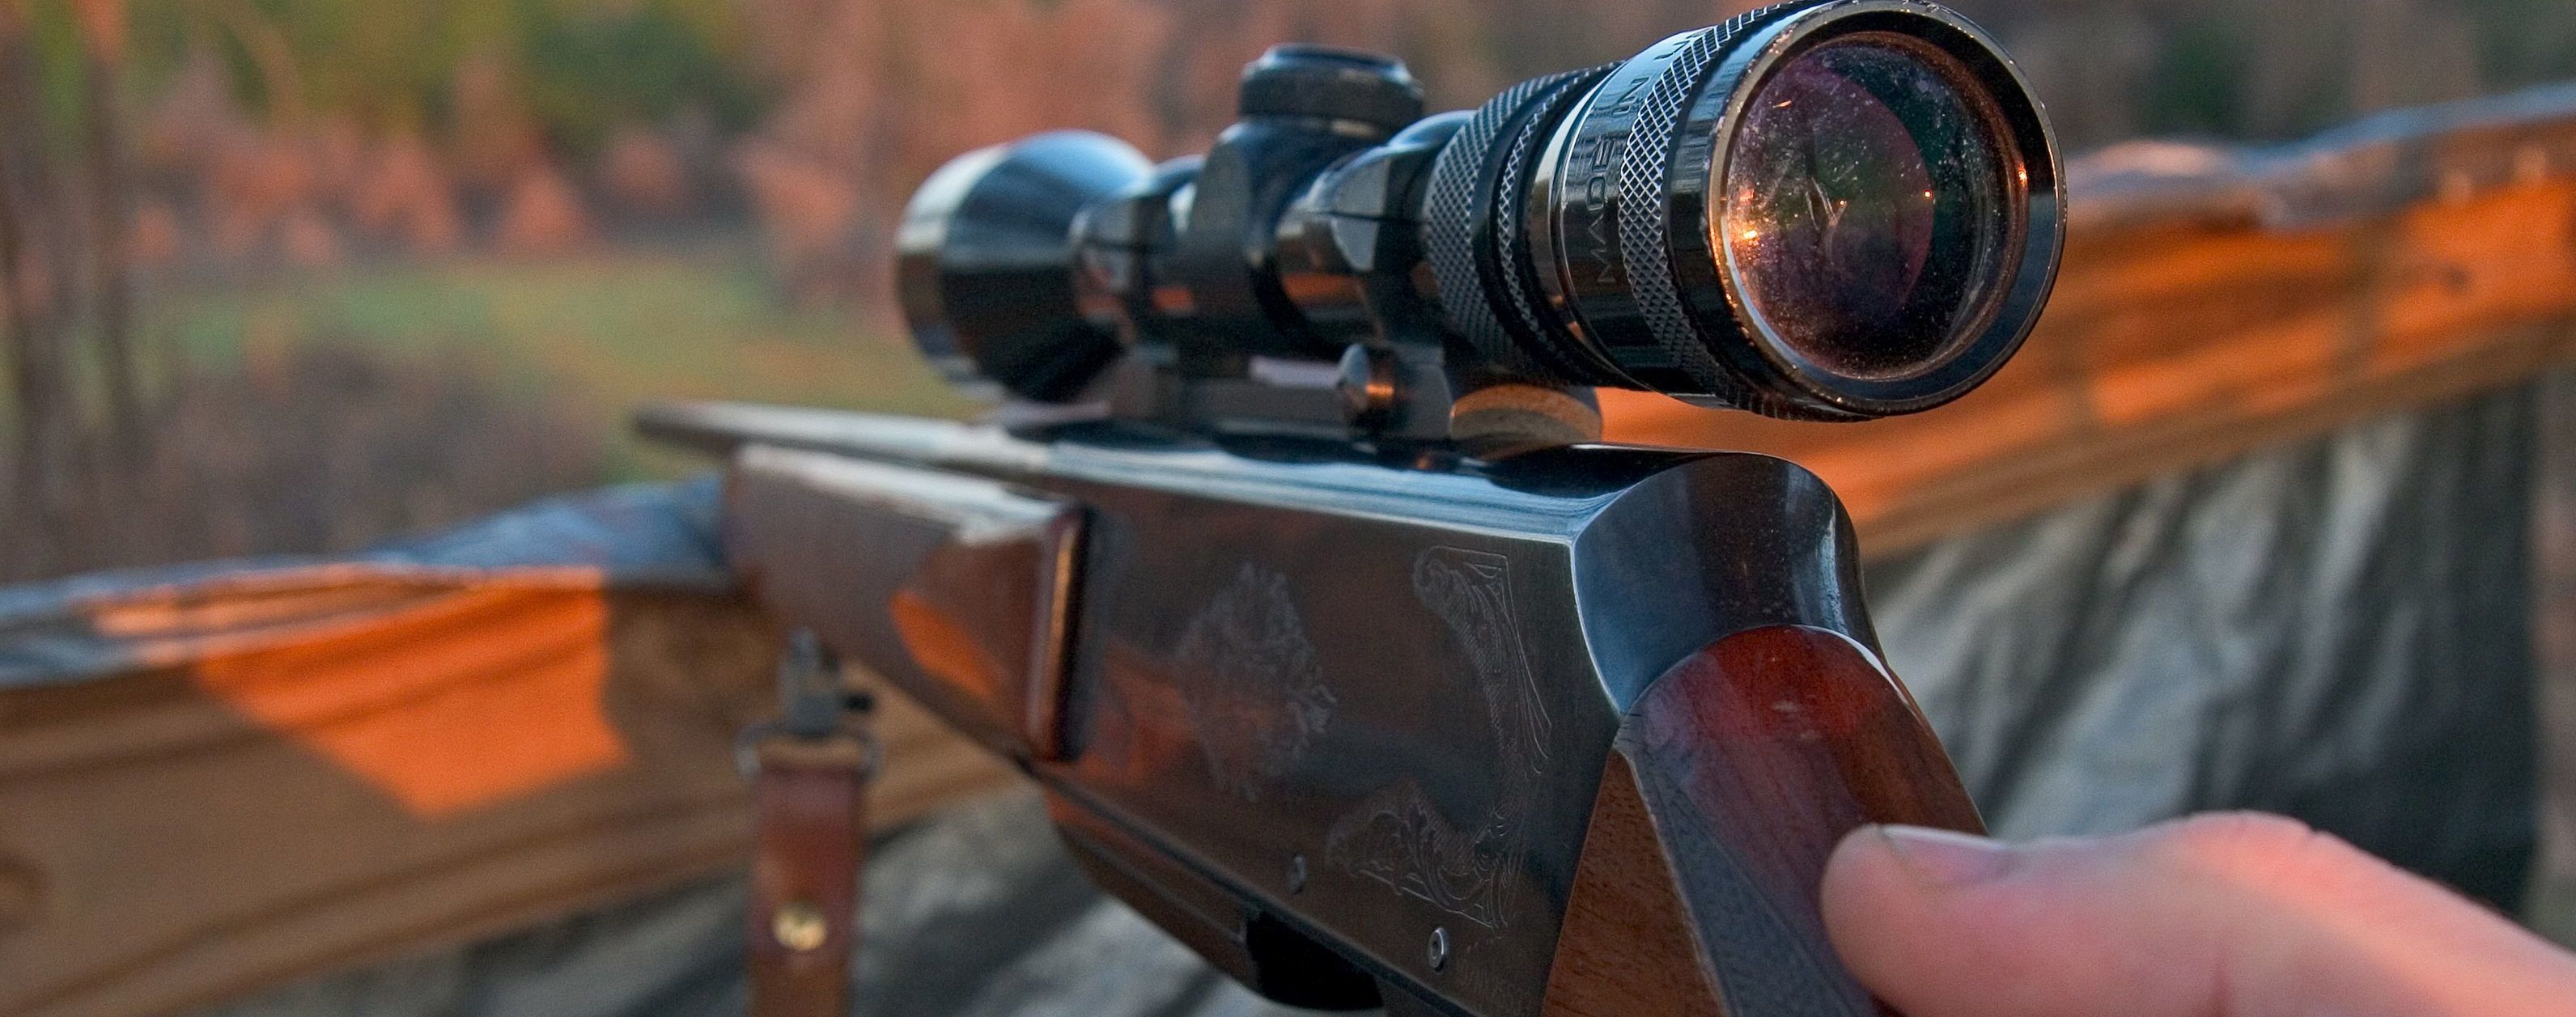 В РФ пенсионер из охотничьего ружья расстрелял соседа из-за детского плача